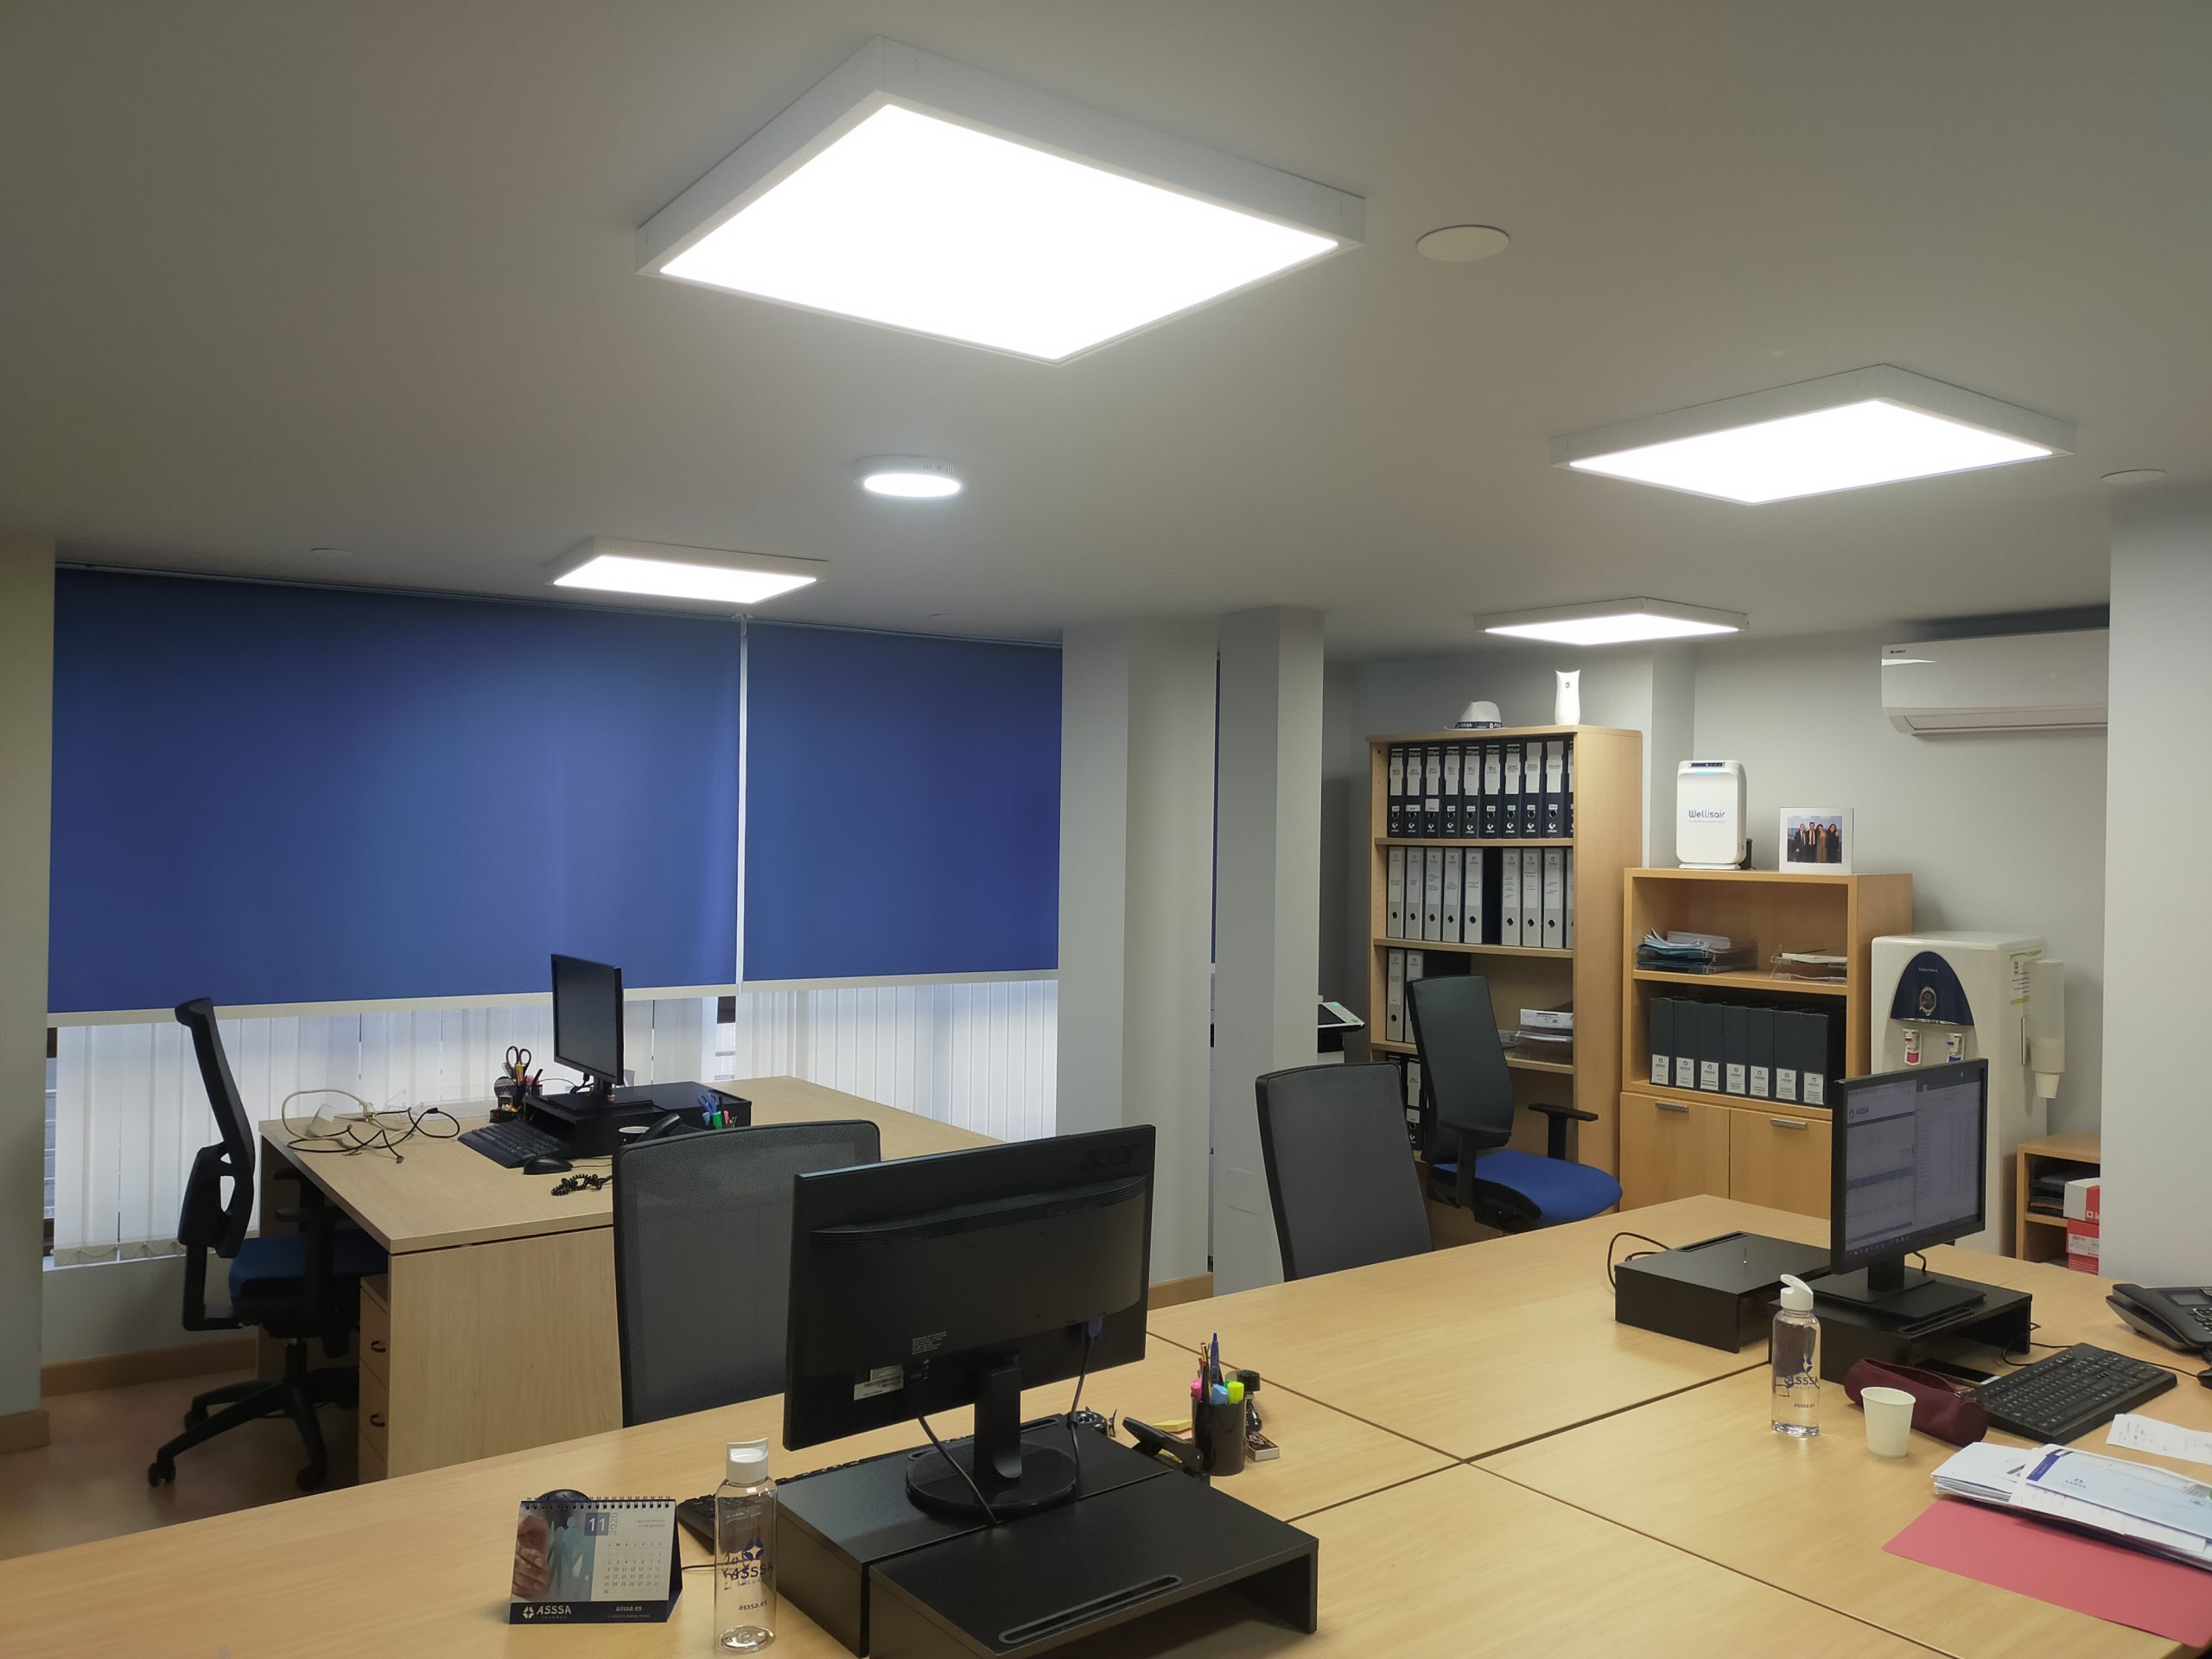 Instalación de iluminación de oficinas - Electricitat Caricano